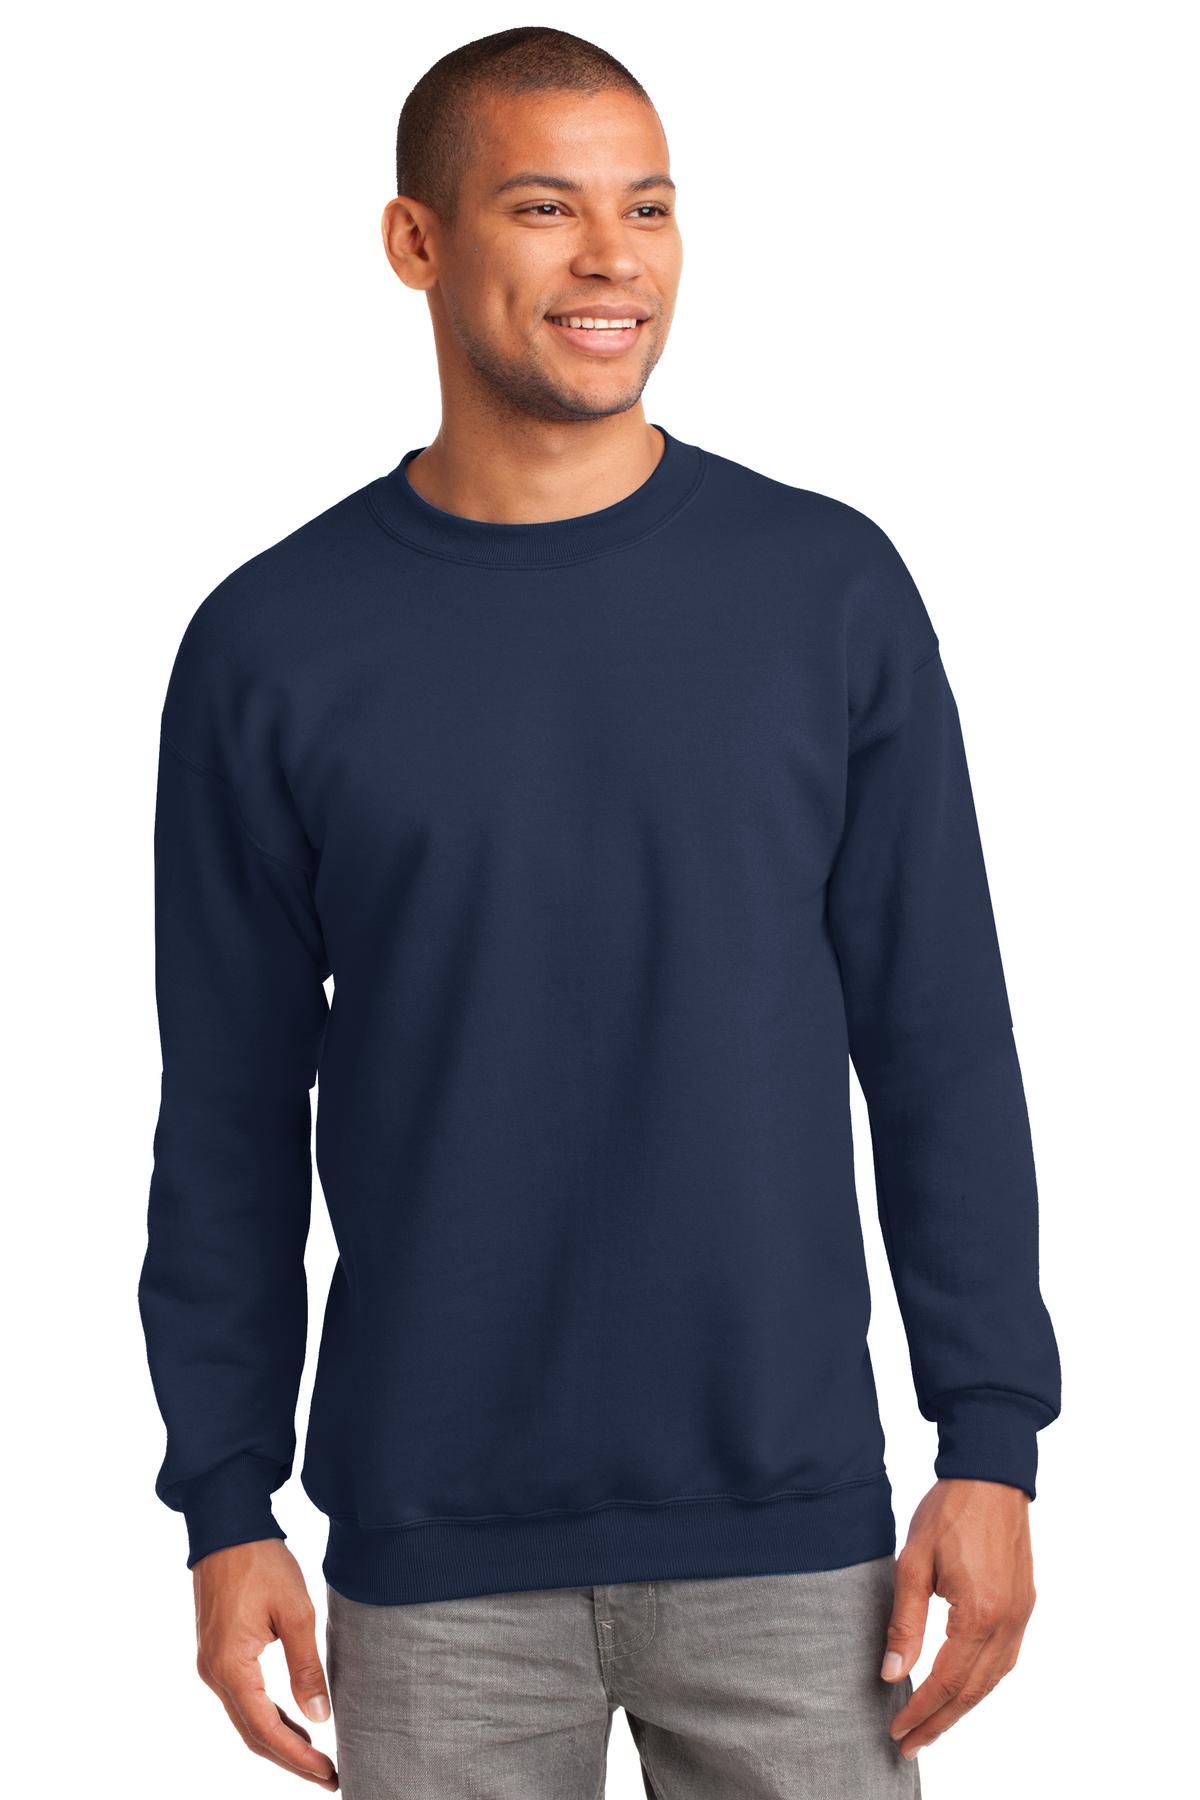 Sweatshirts/Fleece Navy Port & Company